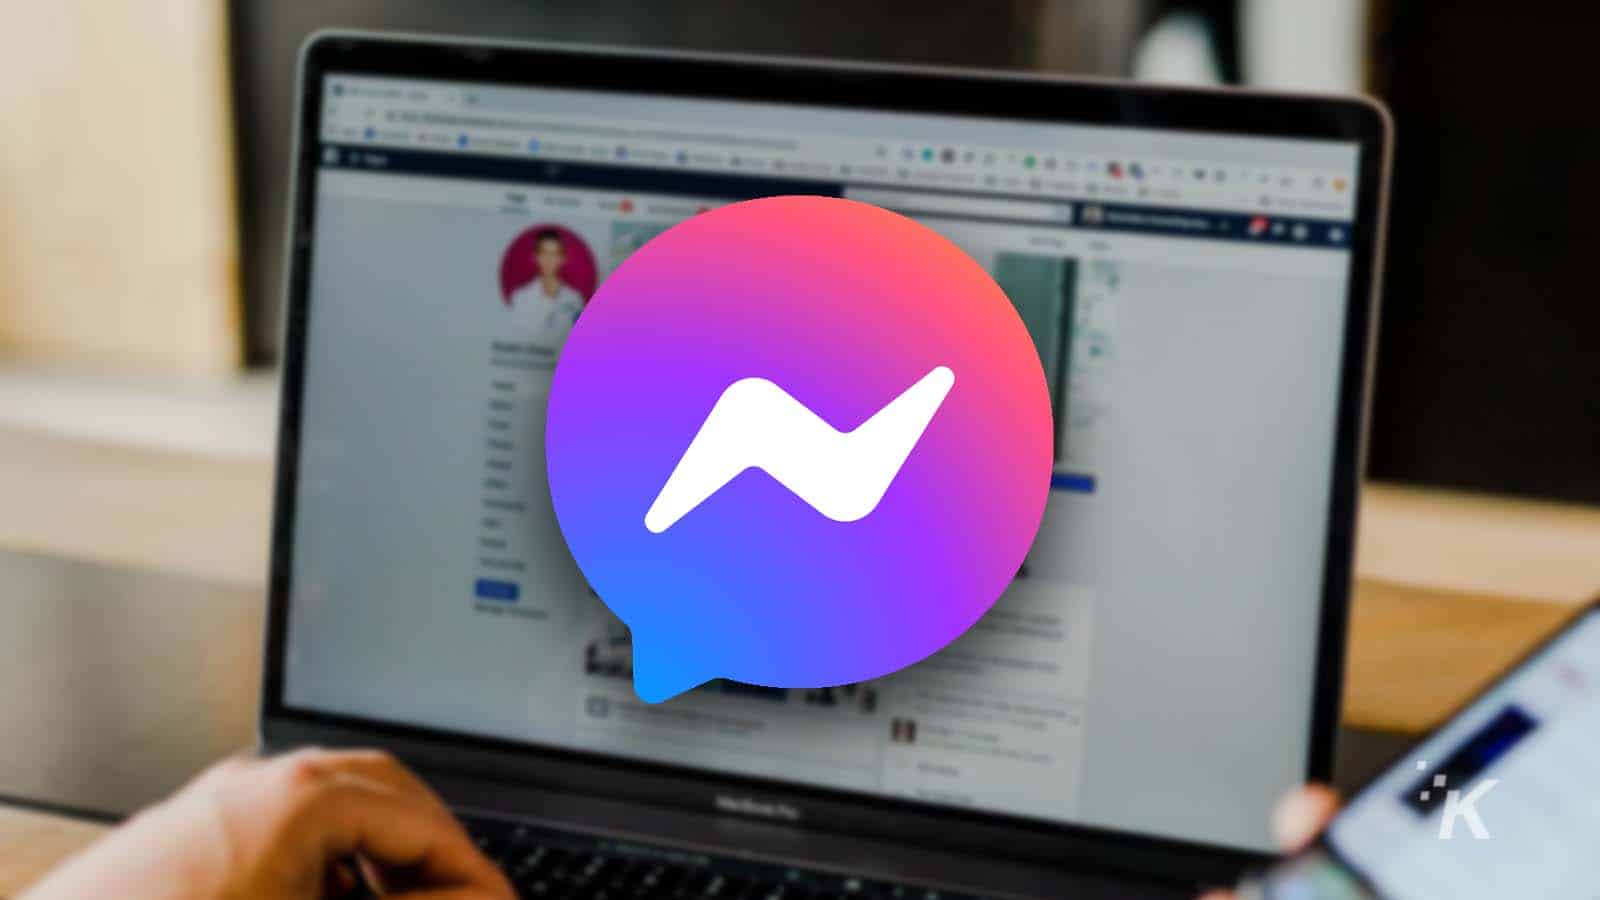 facebook messenger logo on blurred background